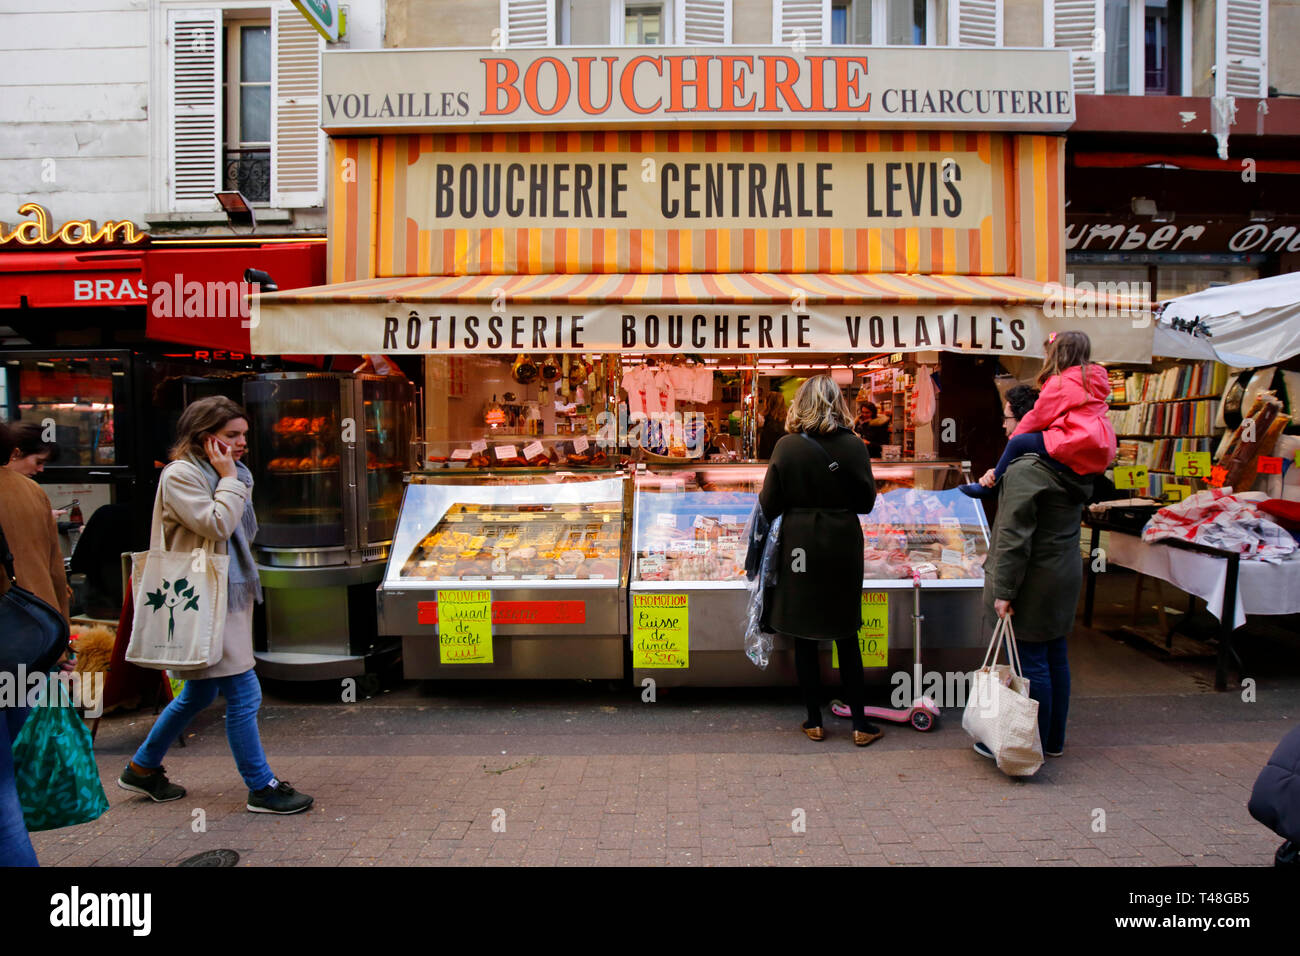 Boucherie Centrale Levis, 26 rue de Lévis, Paris, France. vitrine extérieure d'une boucherie. Banque D'Images